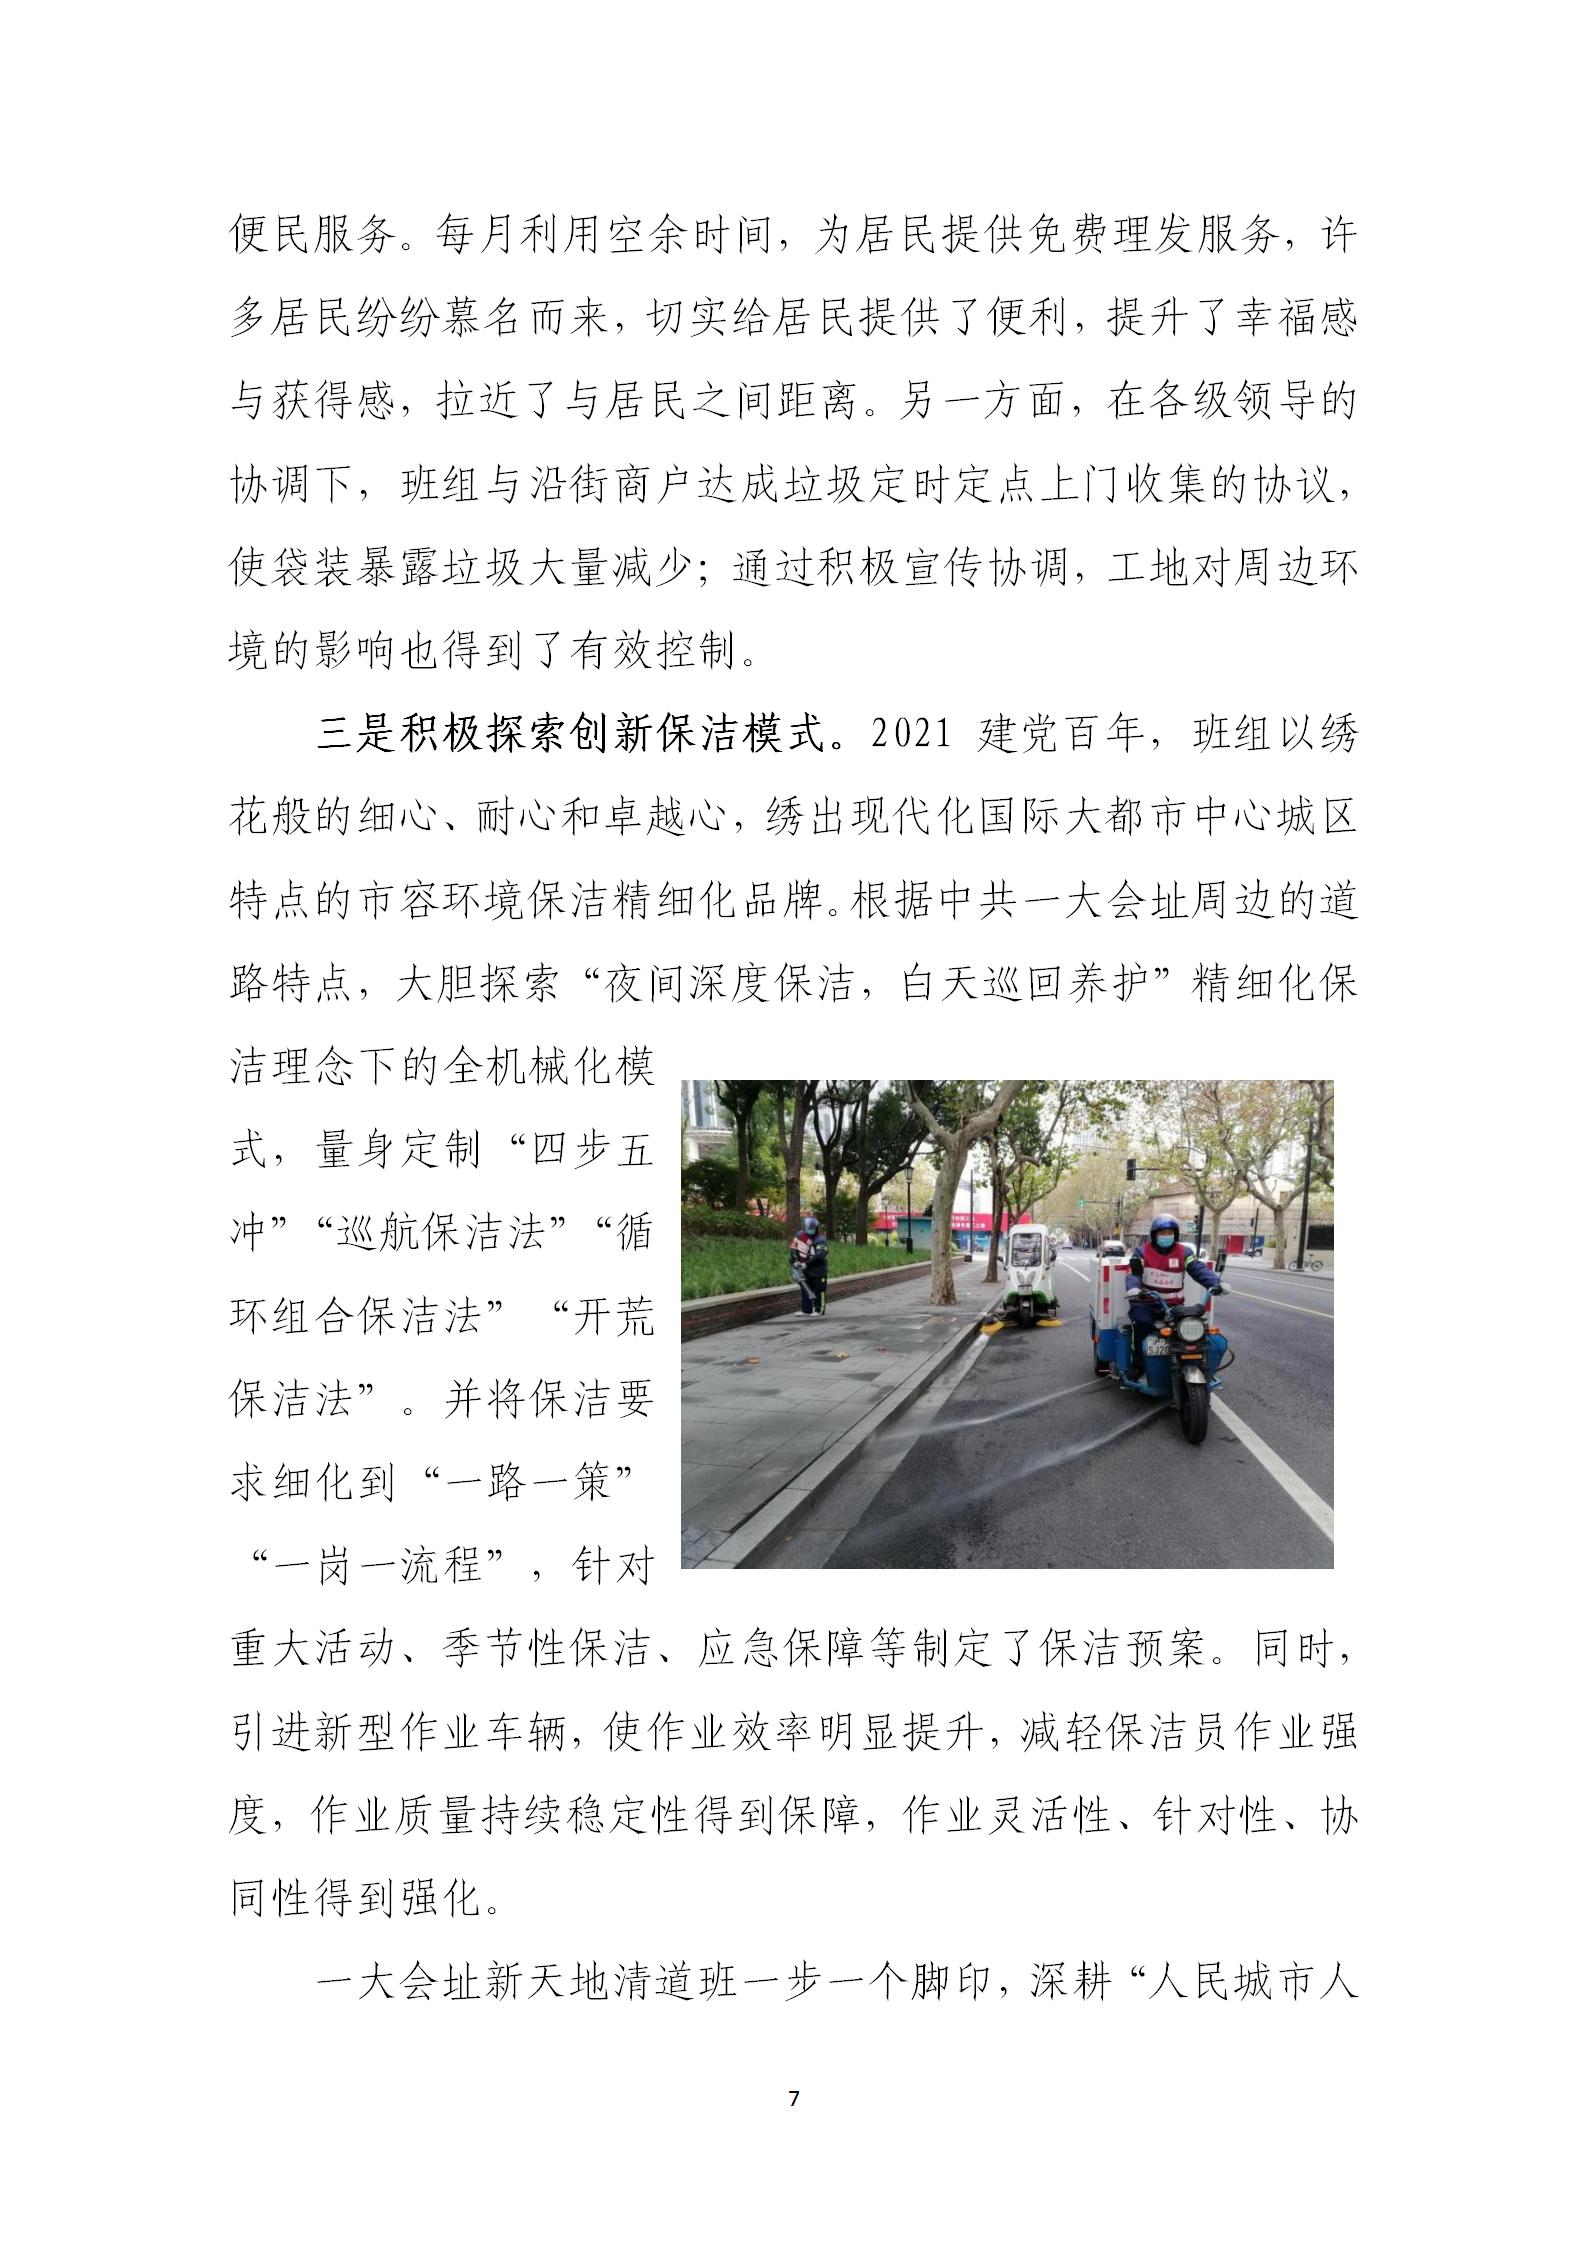 上海市道路保洁与垃圾清运工作月刊  2023年第3期(8)_07.jpg